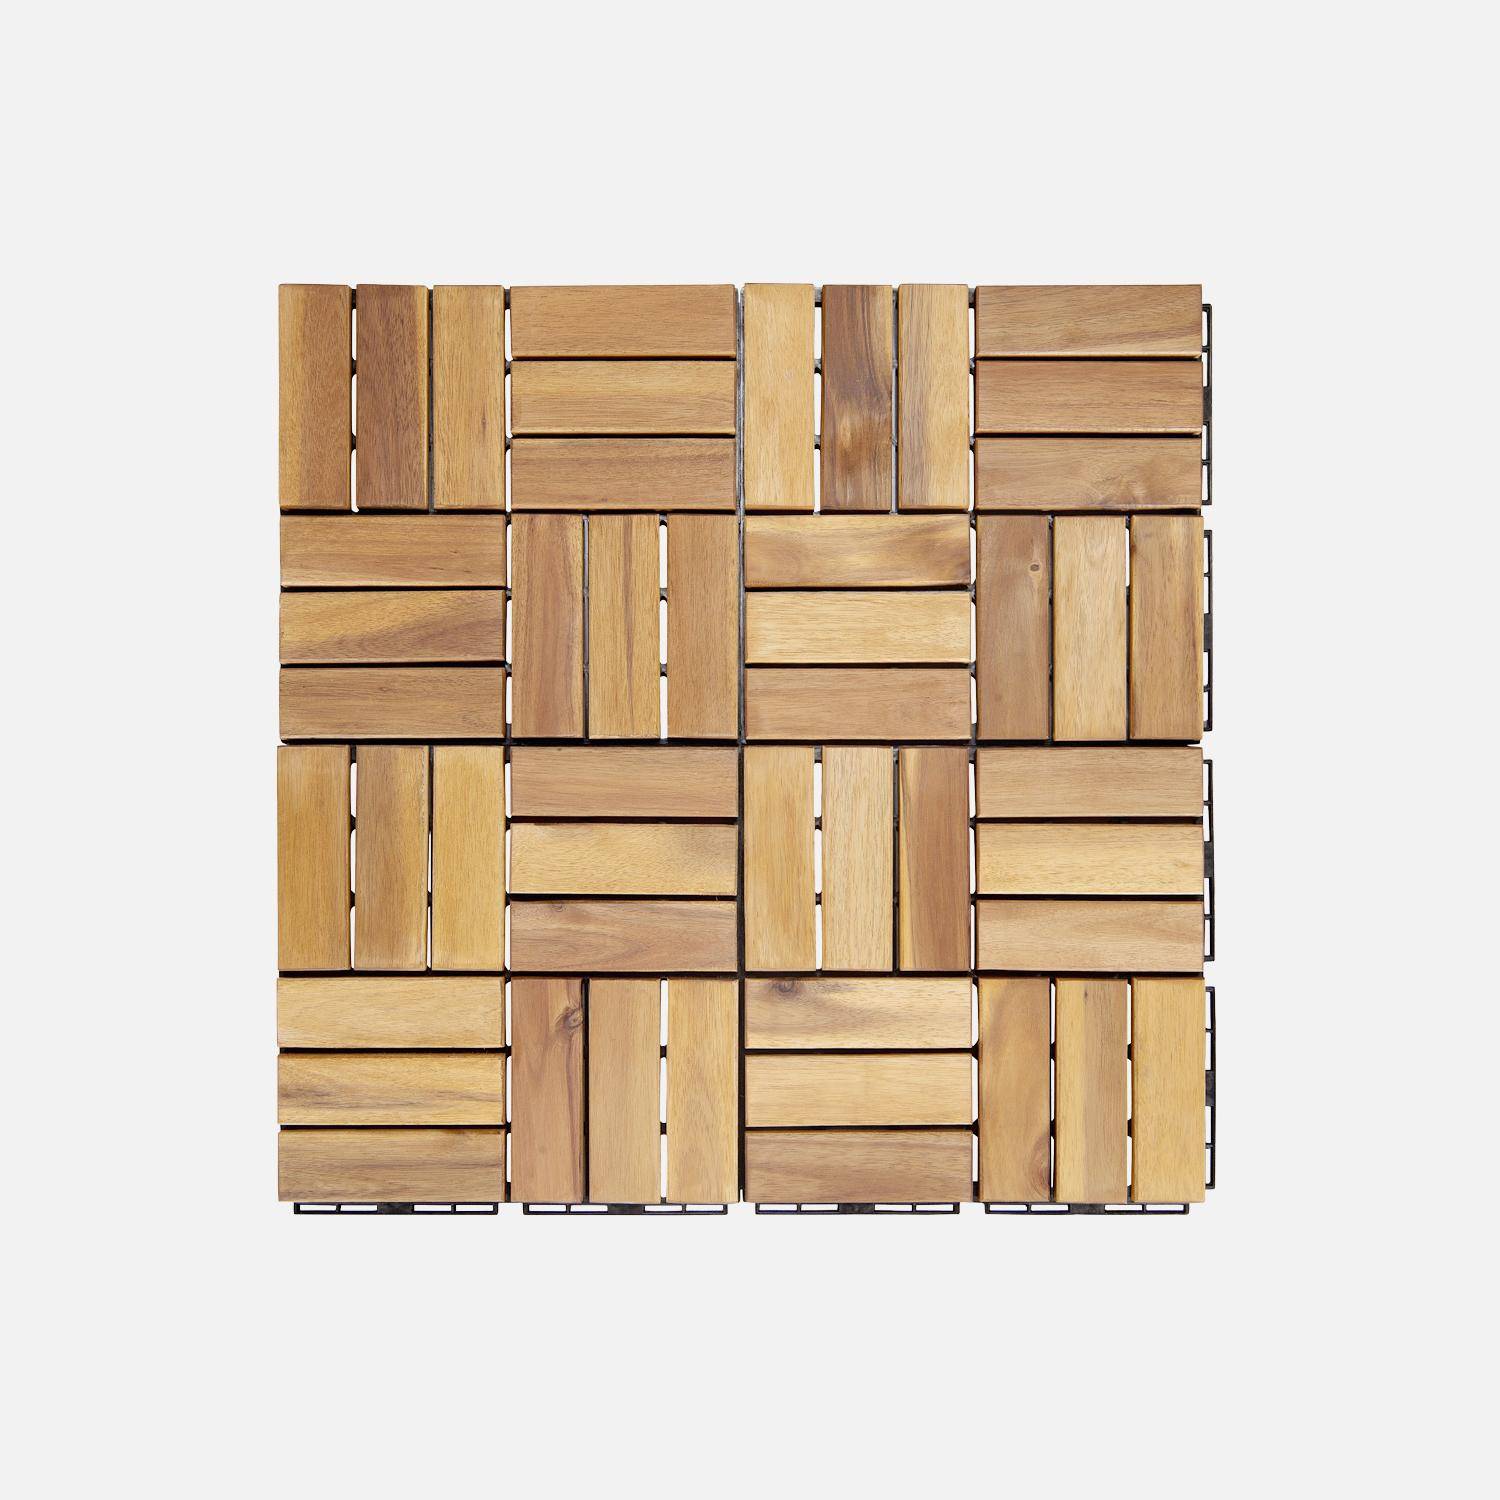 Lote de 36 ladrilhos de madeira de acácia para decks 30x30cm, padrão quadrado, encaixáveis,sweeek,Photo4